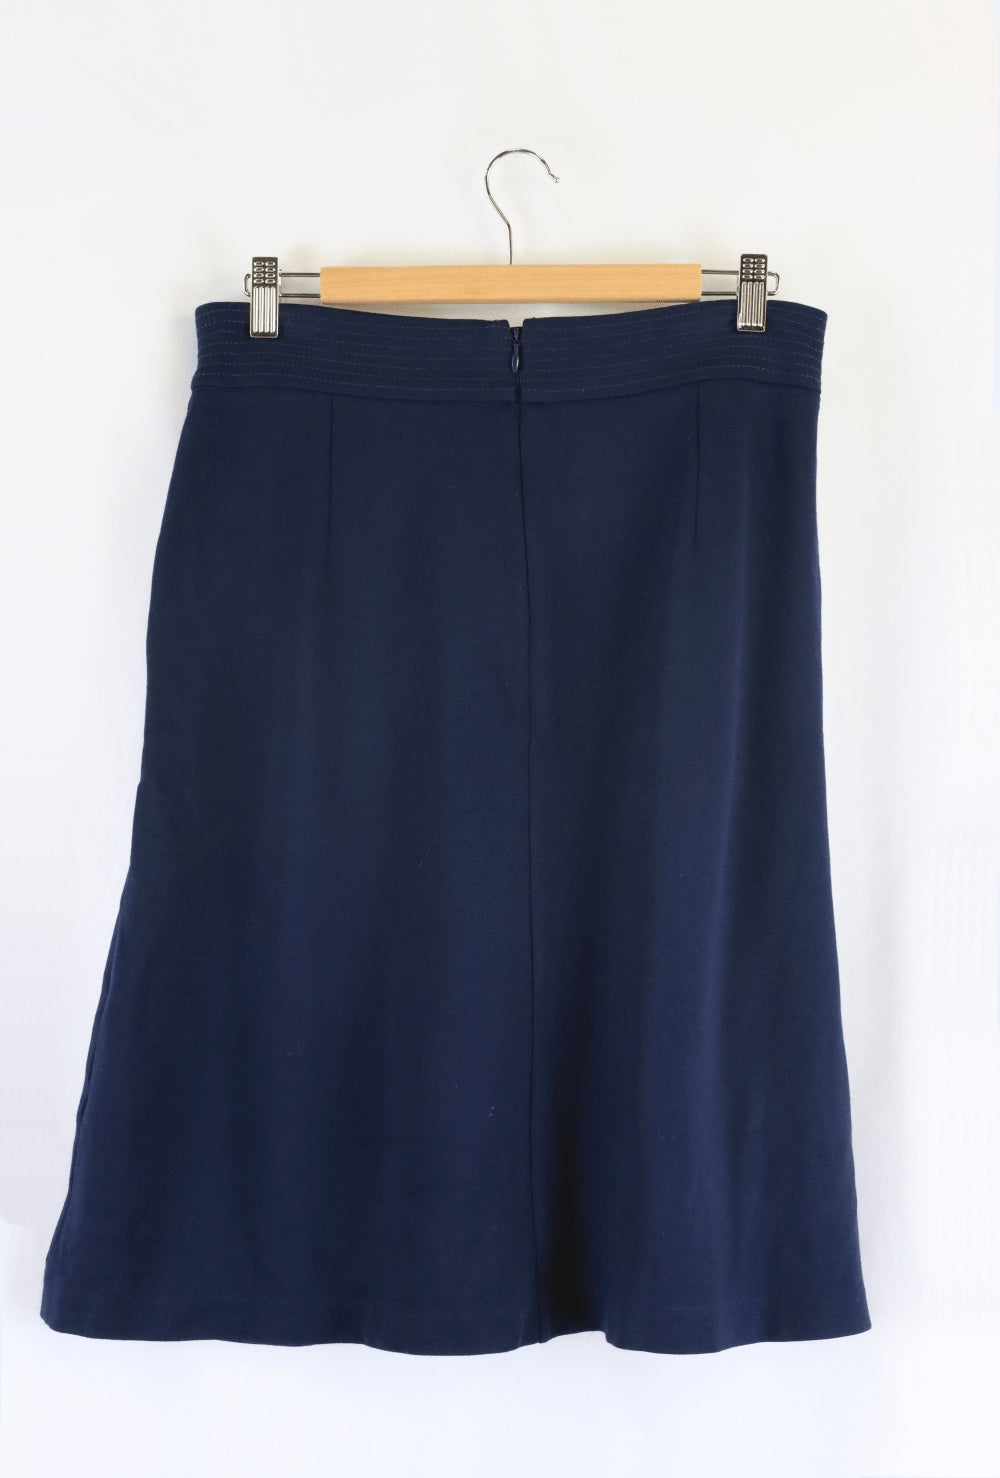 Diana Ferrari Navy Skirt 10